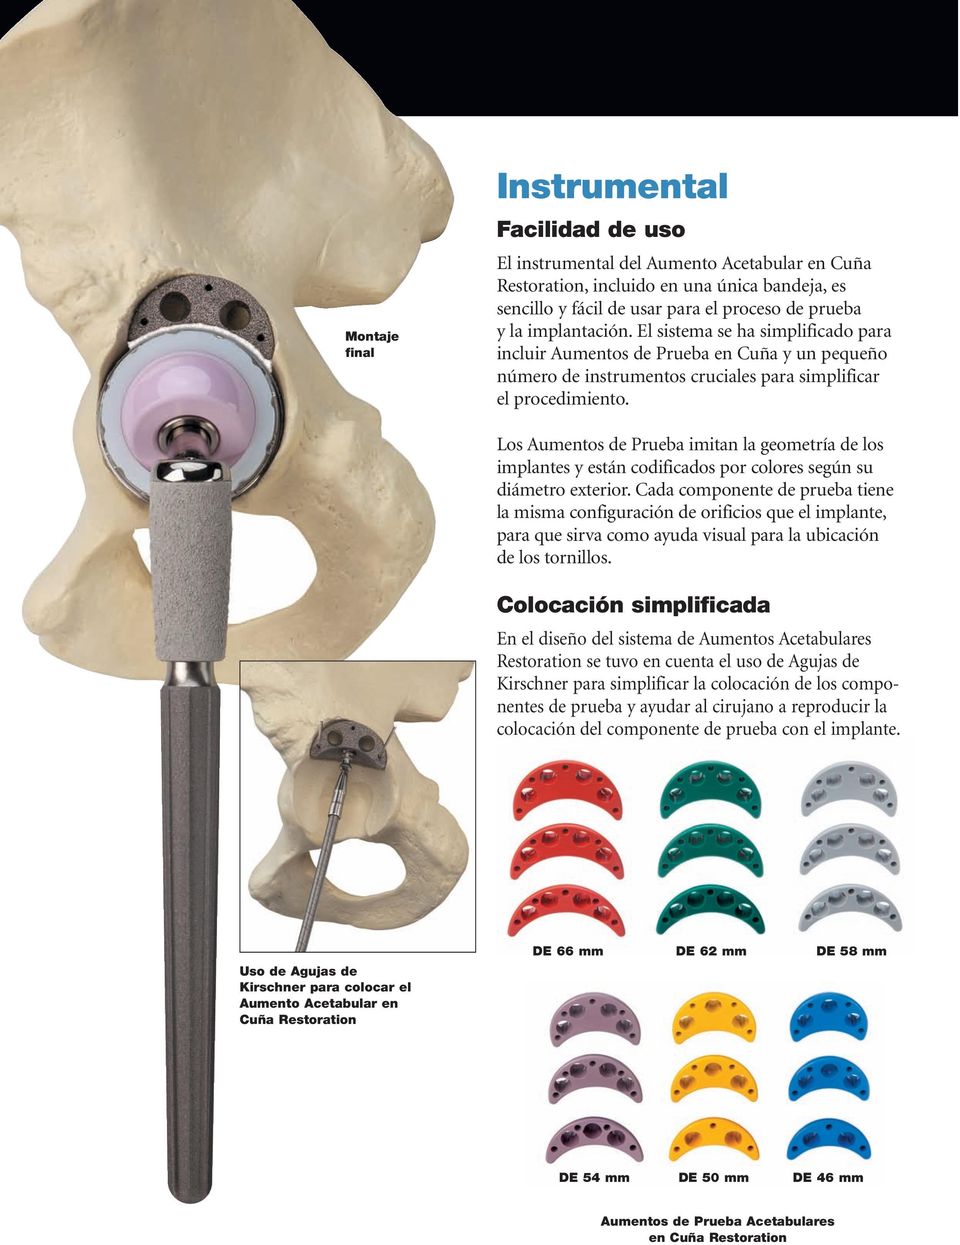 Los Aumentos de Prueba imitan la geometría de los implantes y están codificados por colores según su diámetro exterior.